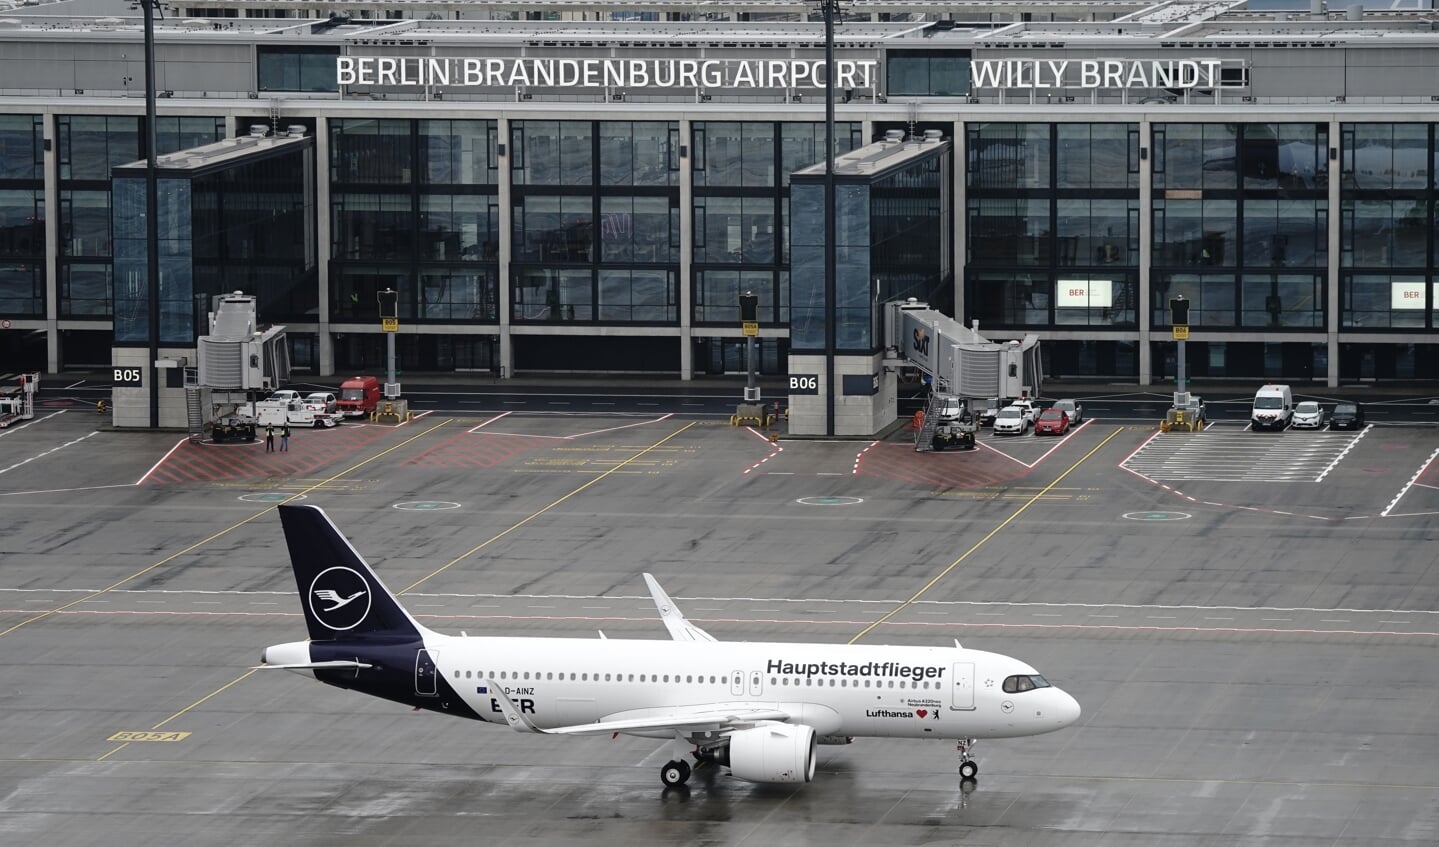 Lørdag kunne de første fly lette og lande i Berlins nye lufthavn, der har været et af de mest kaotiske projekter i nyere tid. Foto: Kay Nietfeld/dpa POOL/dpa.